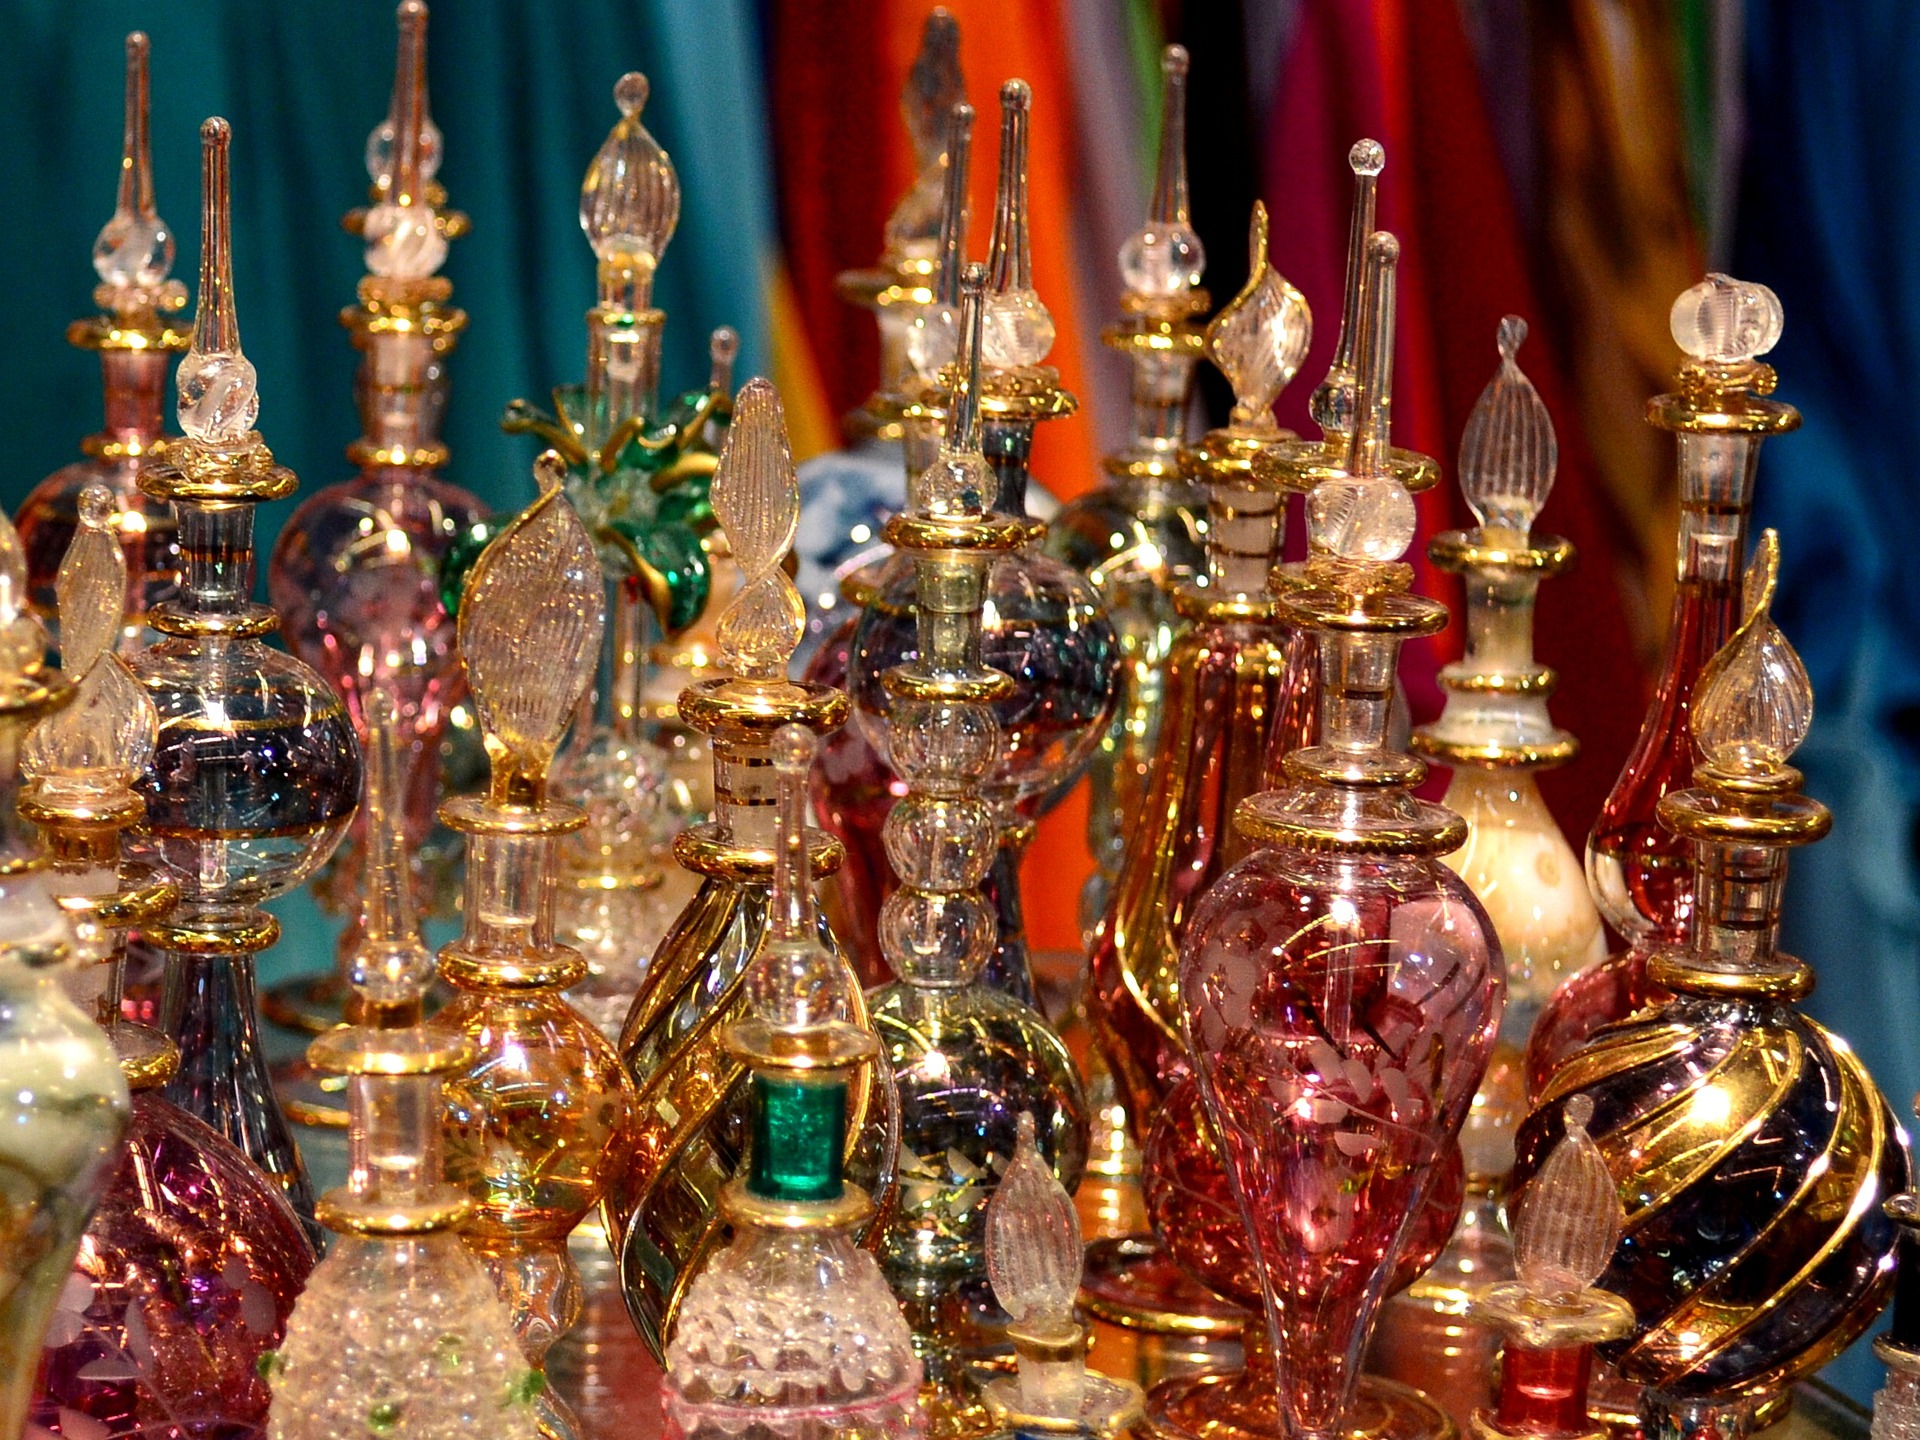 perfumy arabskie